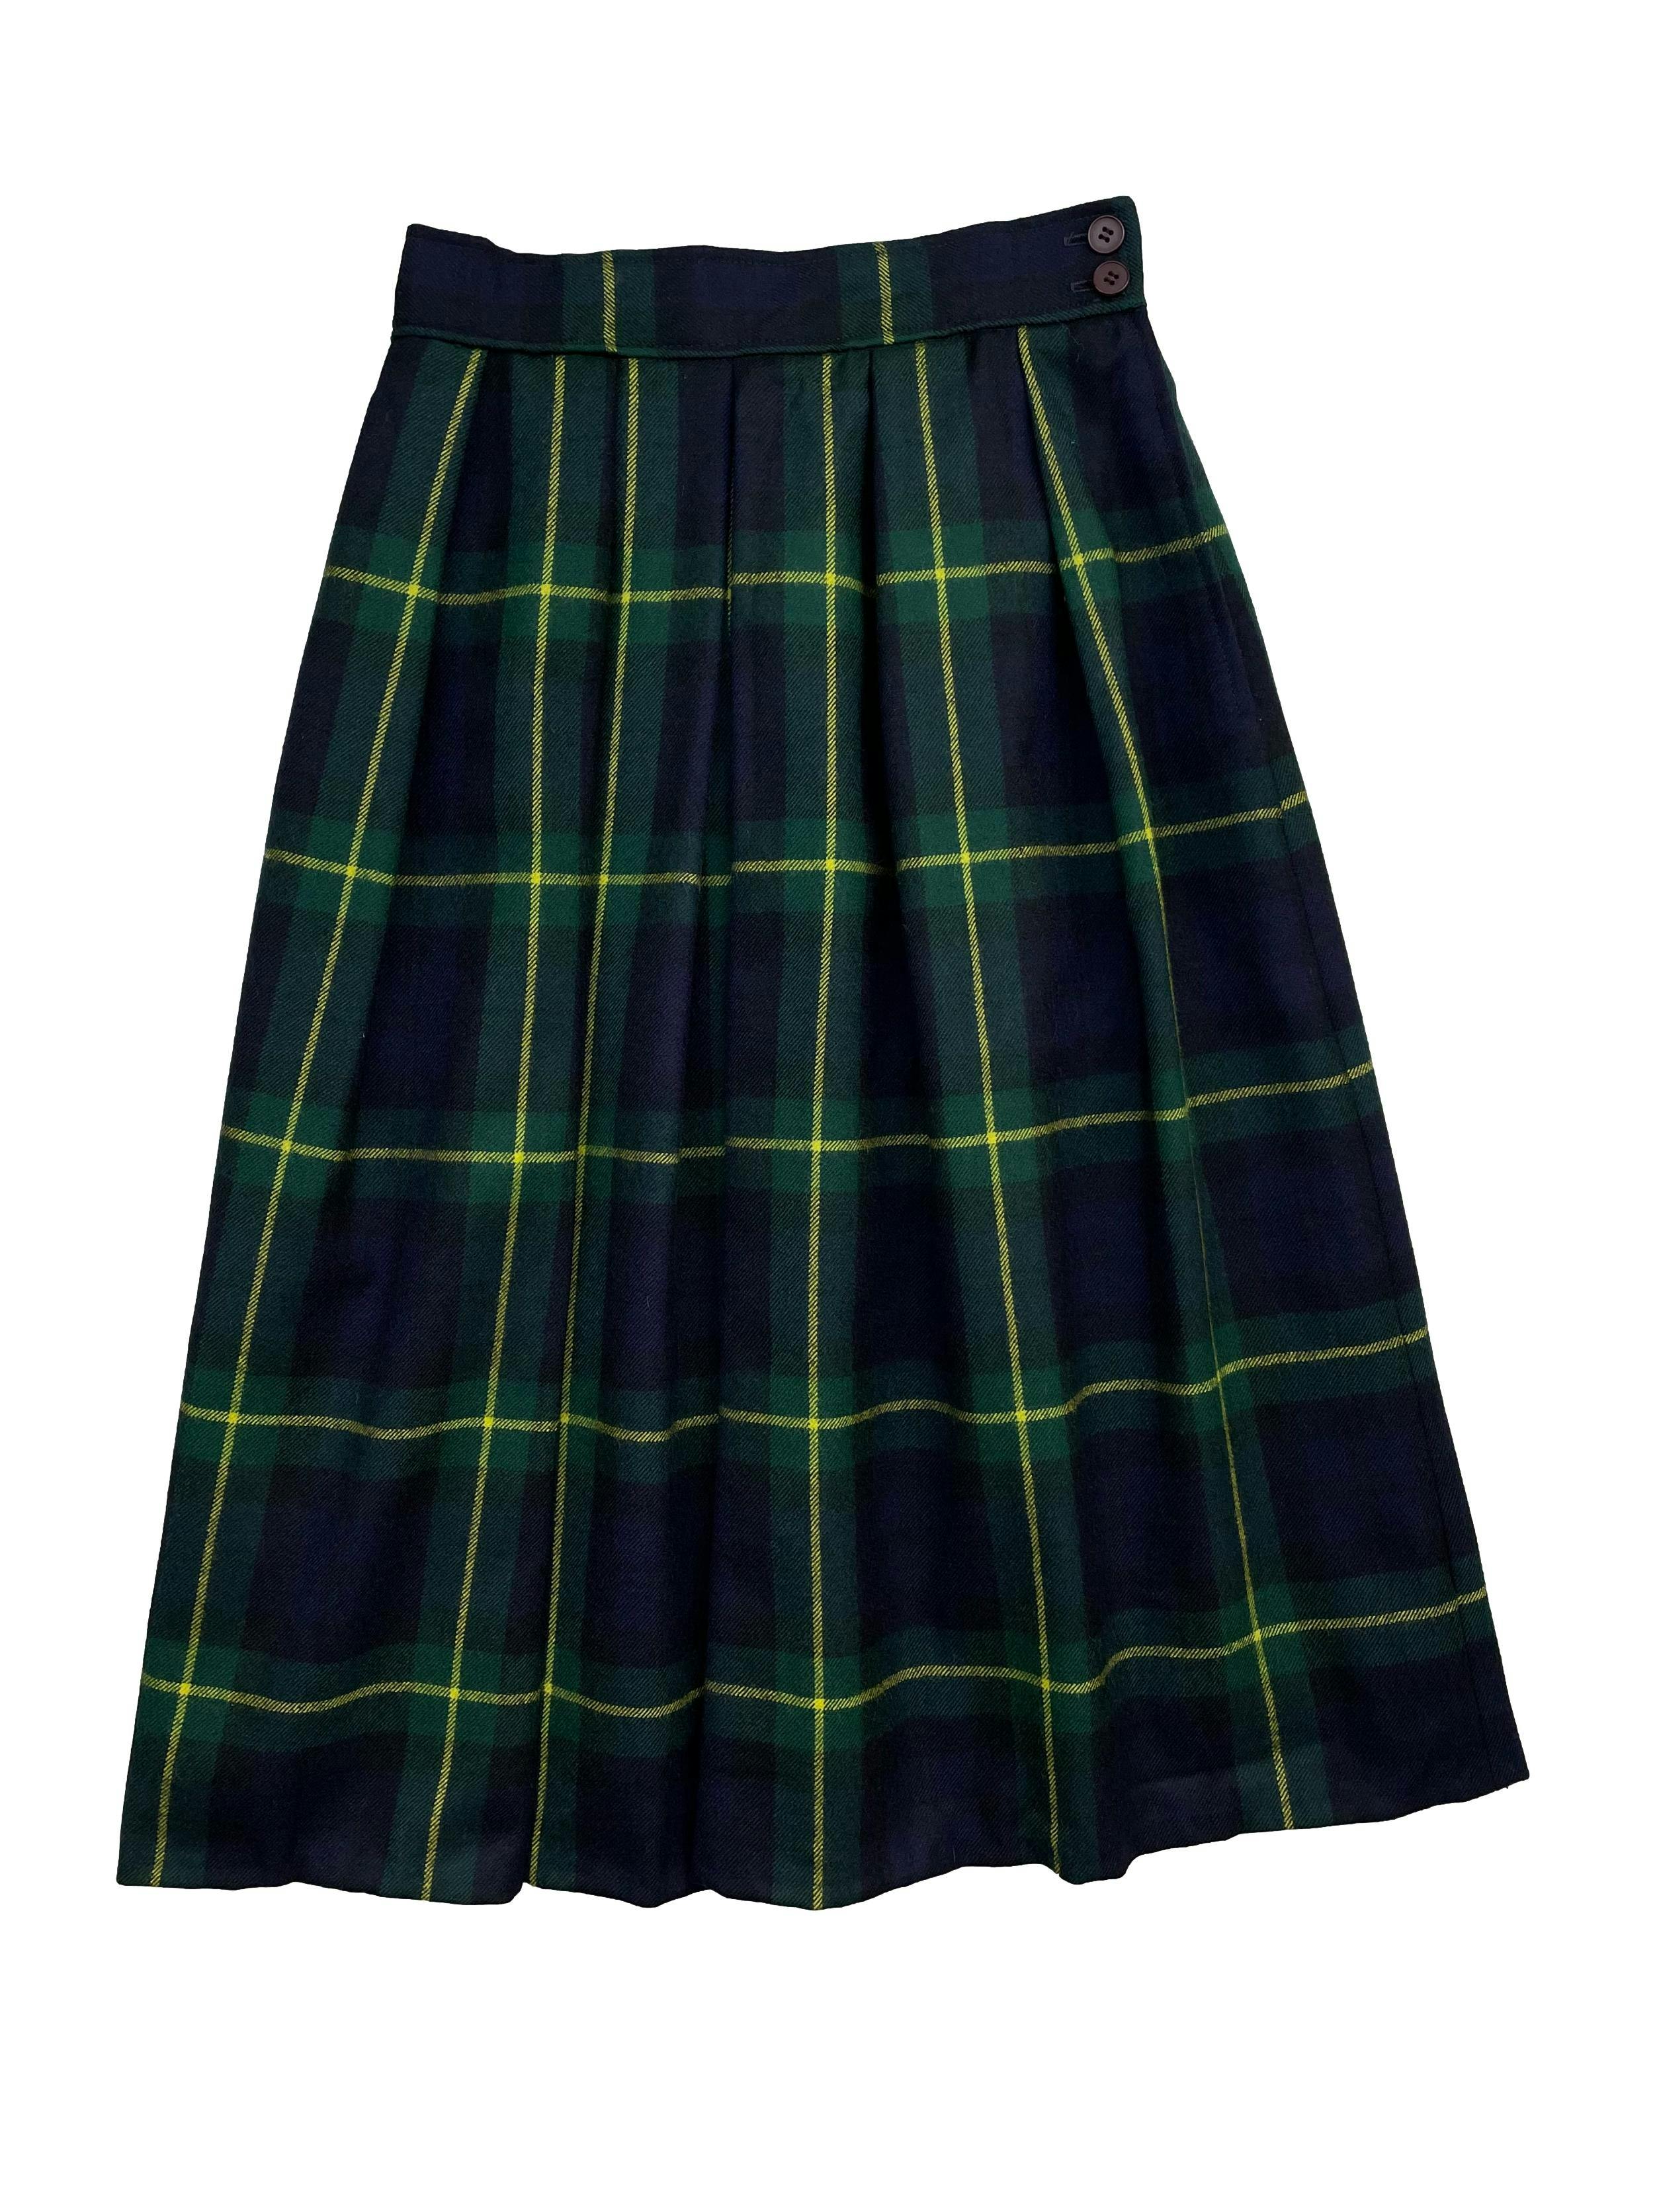 Falda vintage a cuadros escoceses en verde, azul y amarillo ,100%lana con bolsillos laterales. Cintura 66cm ,Largo 70cm.